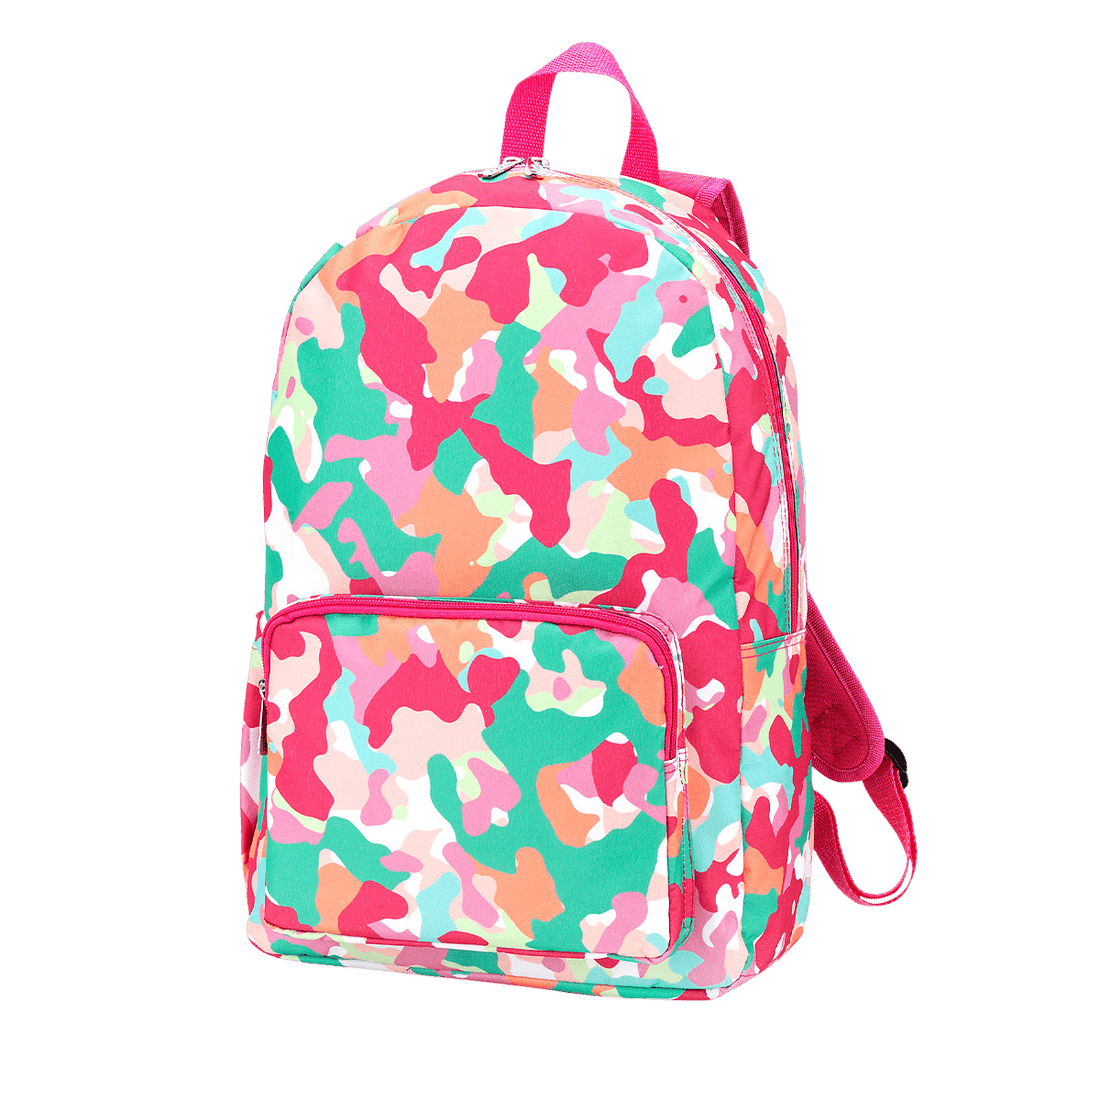 Tootie Fruity Backpack